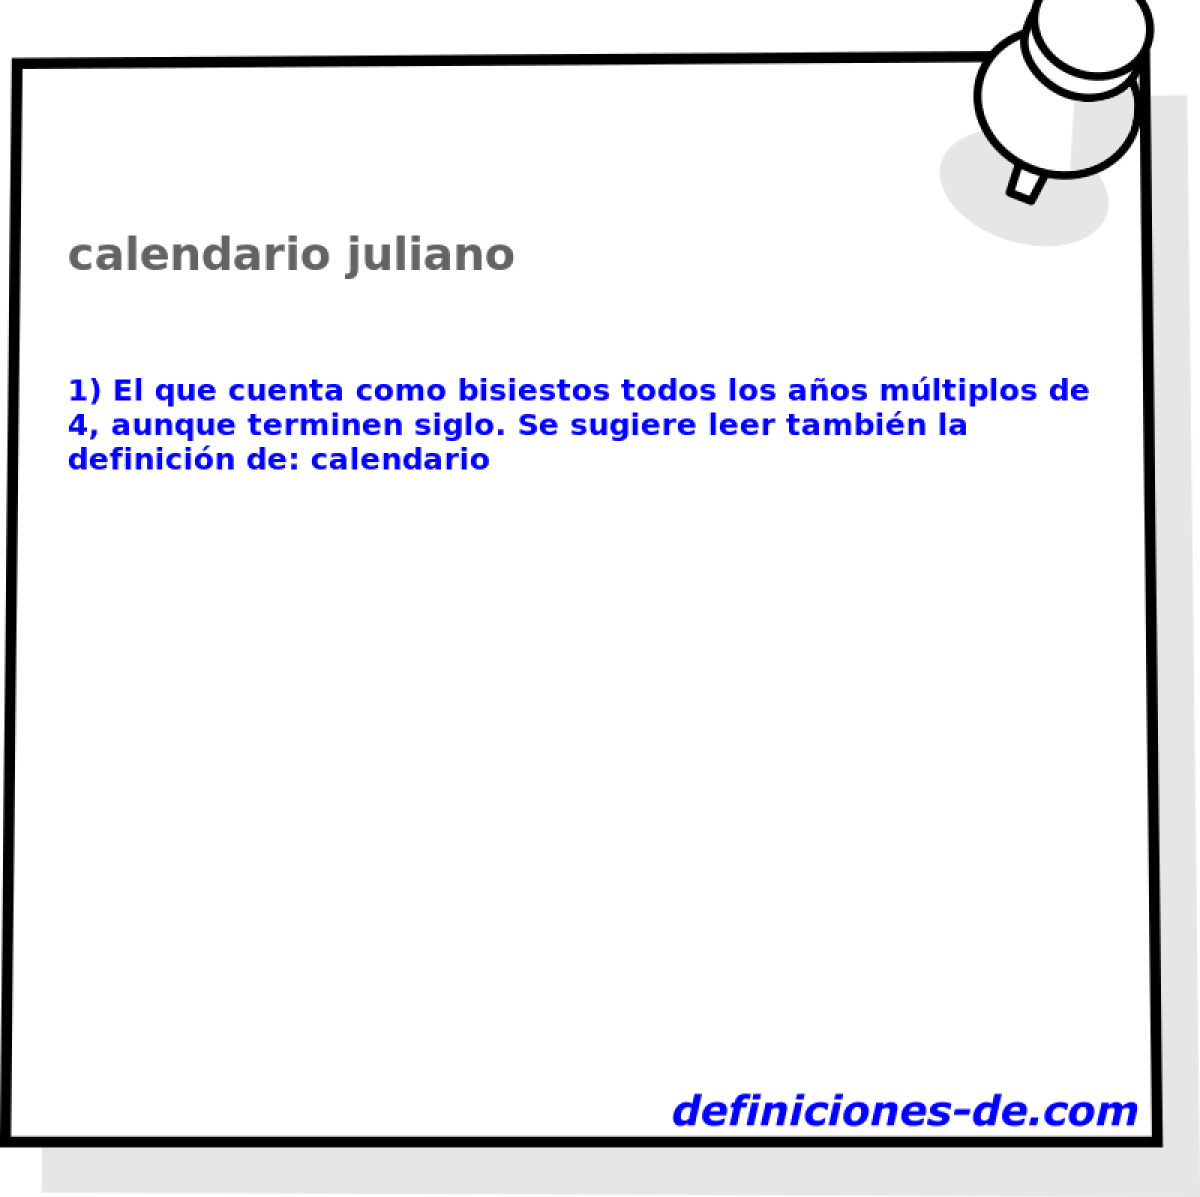 calendario juliano 